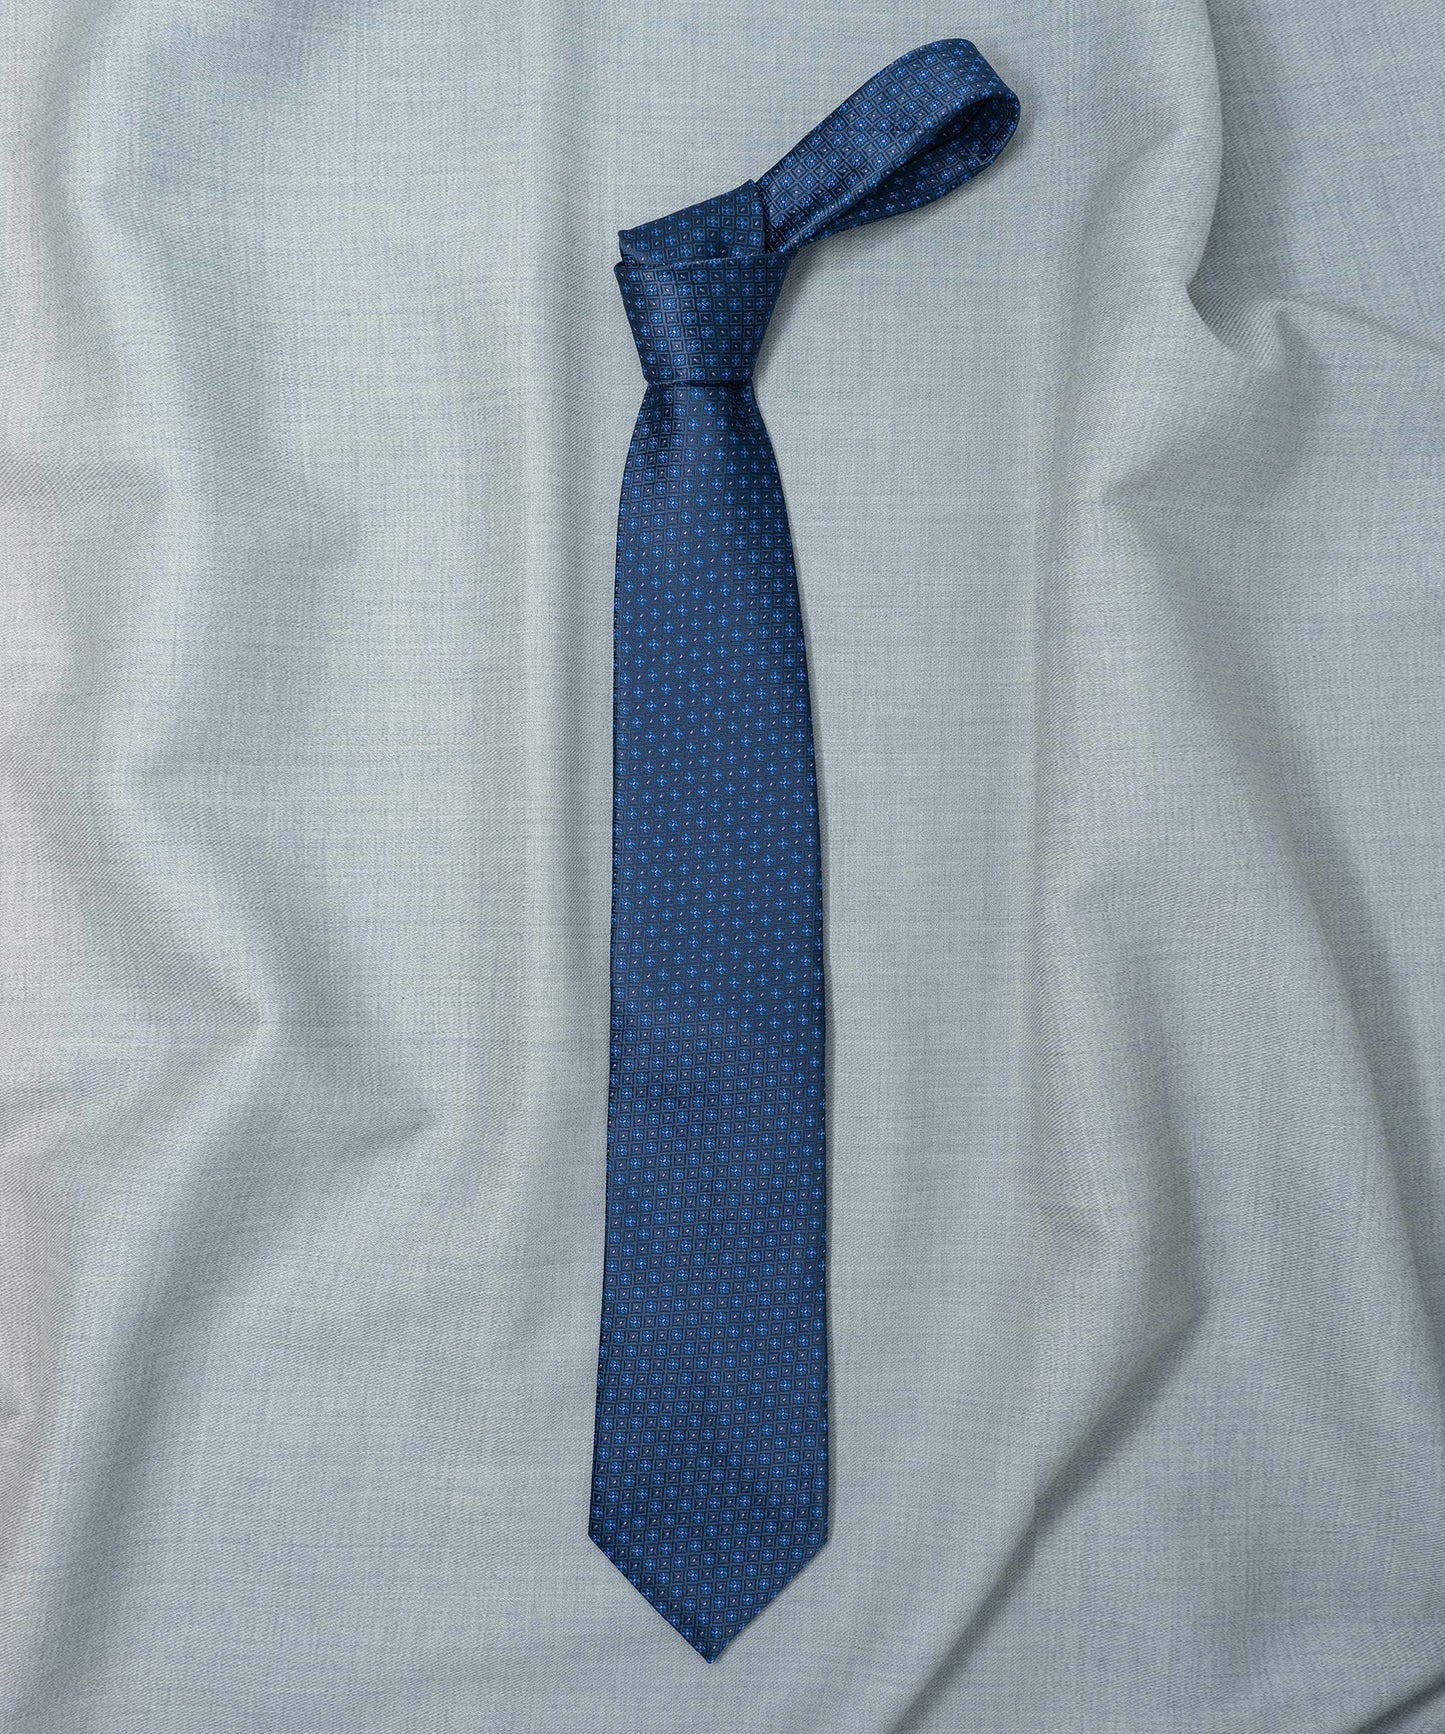 Old School Necktie